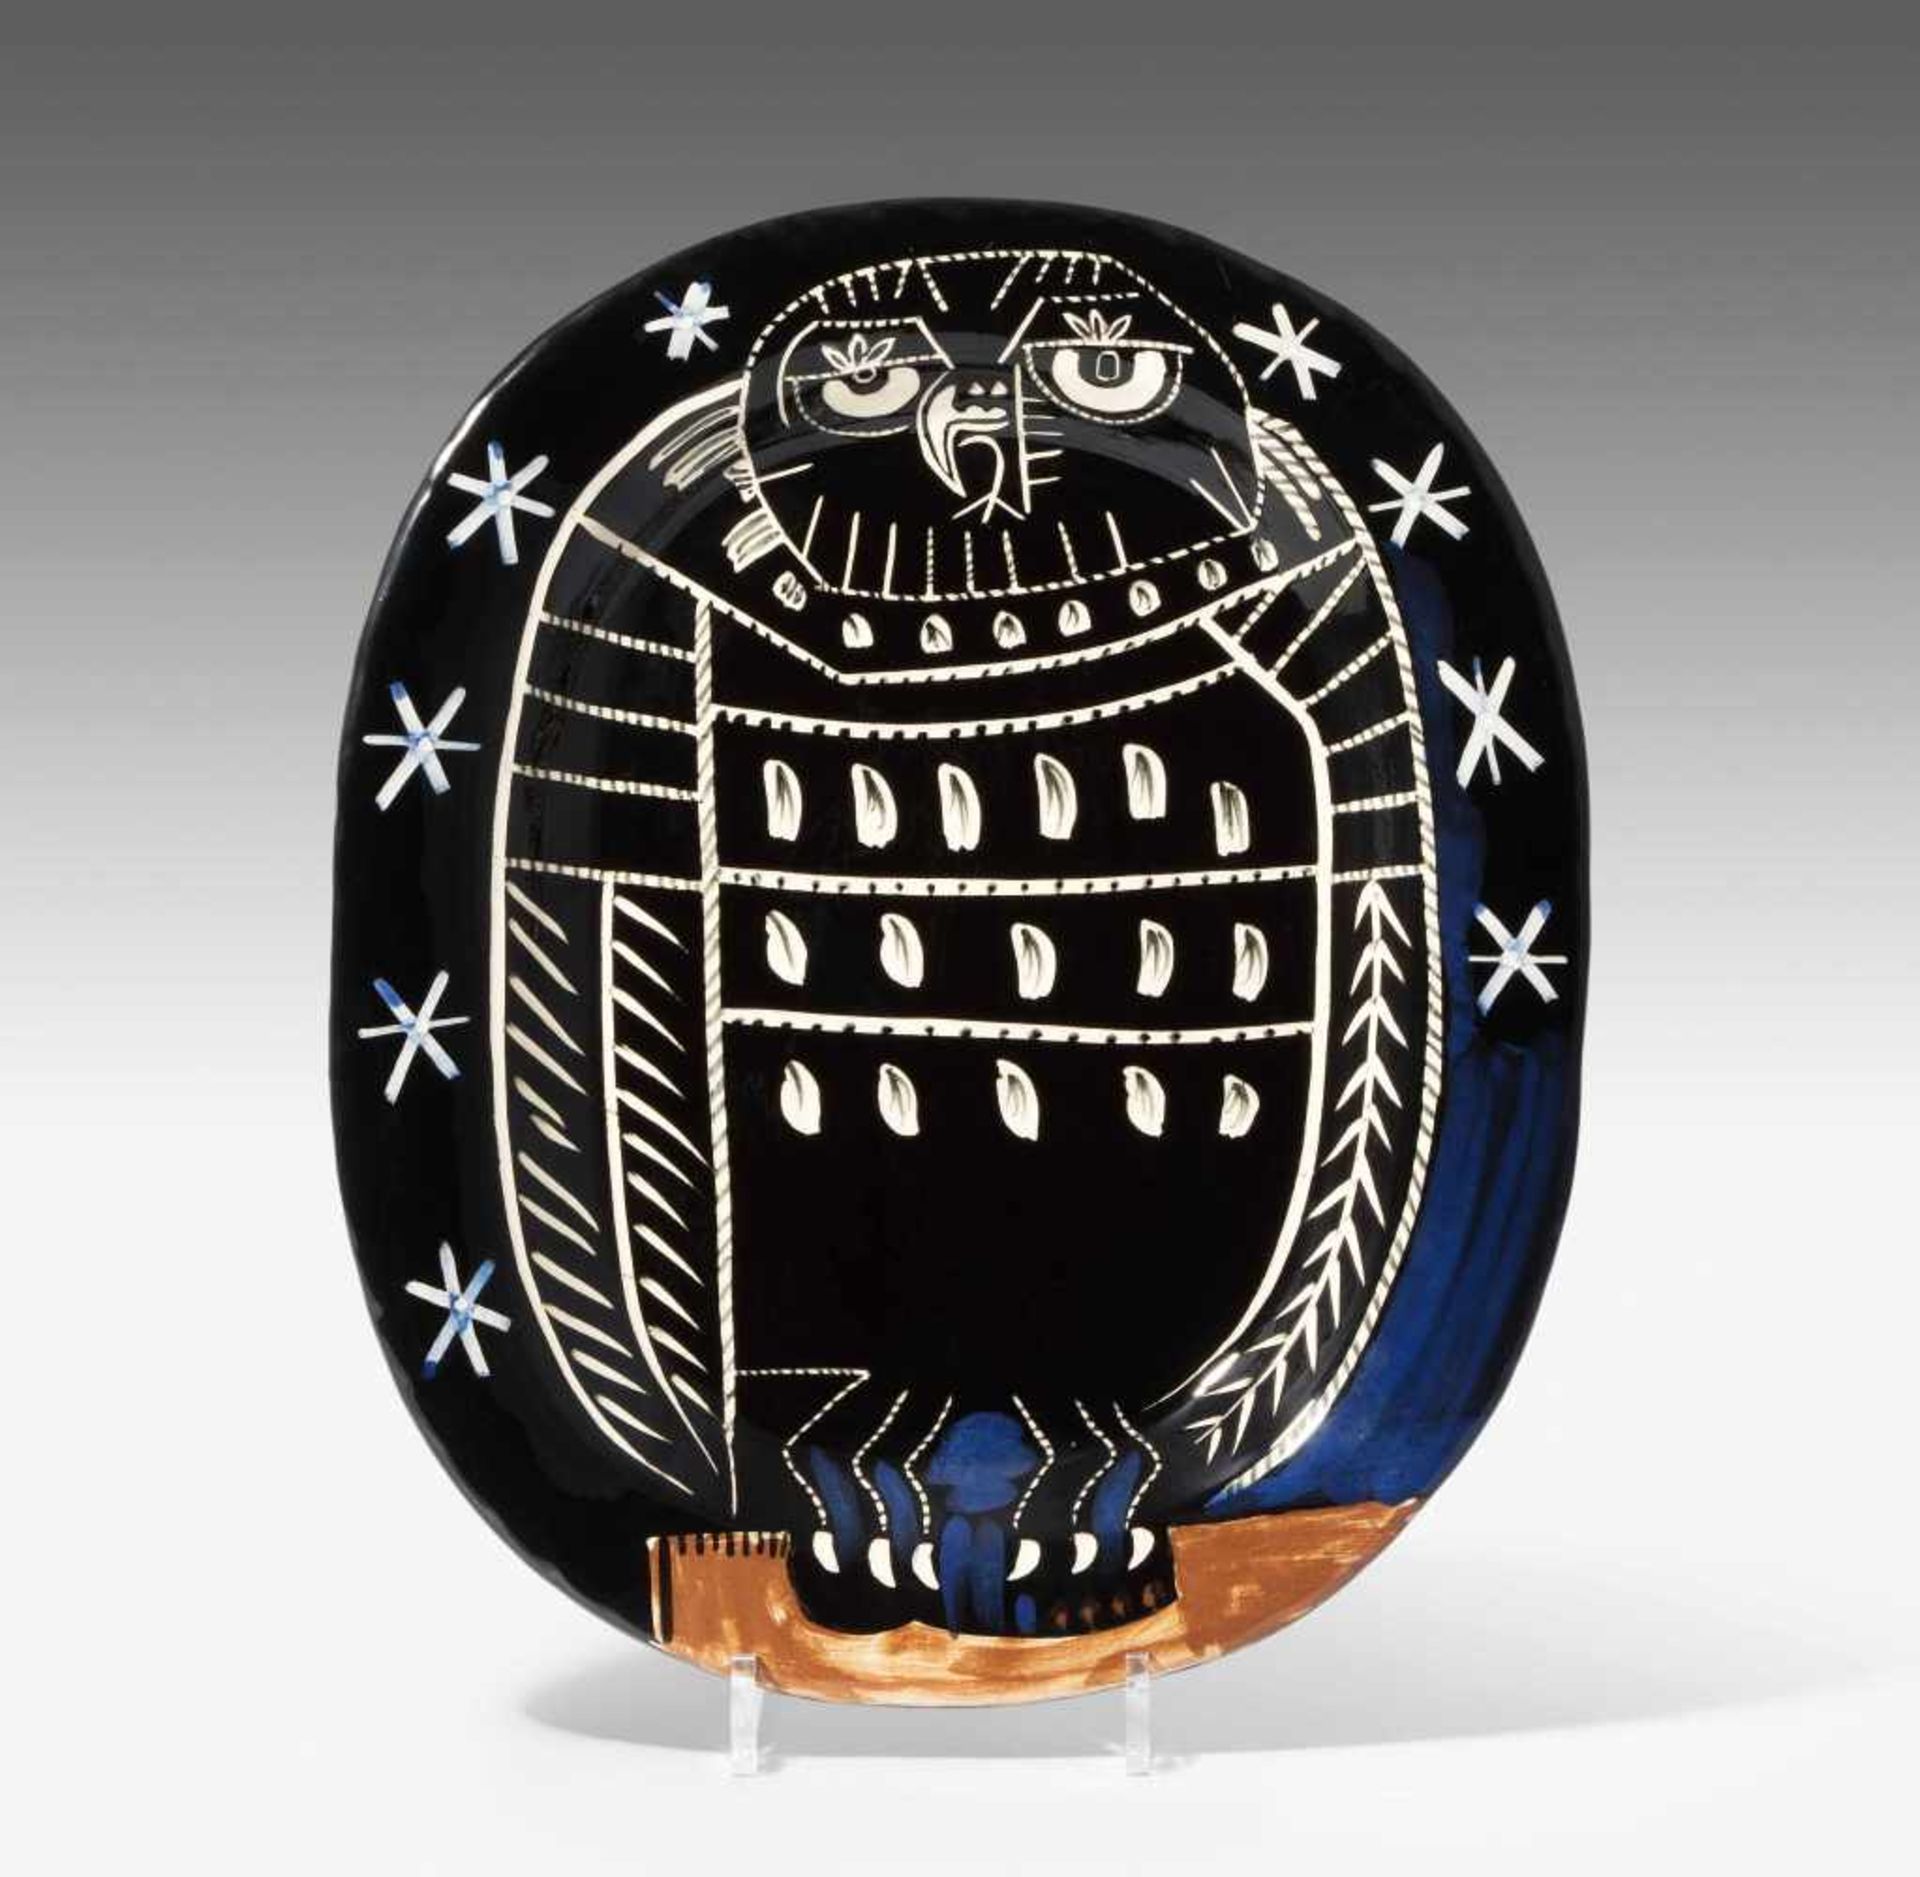 Picasso, Pablo (Malaga 1881–1973 Mougins) "Bright Owl". 1955. Rechteckige Keramikplatte. 1 von 450